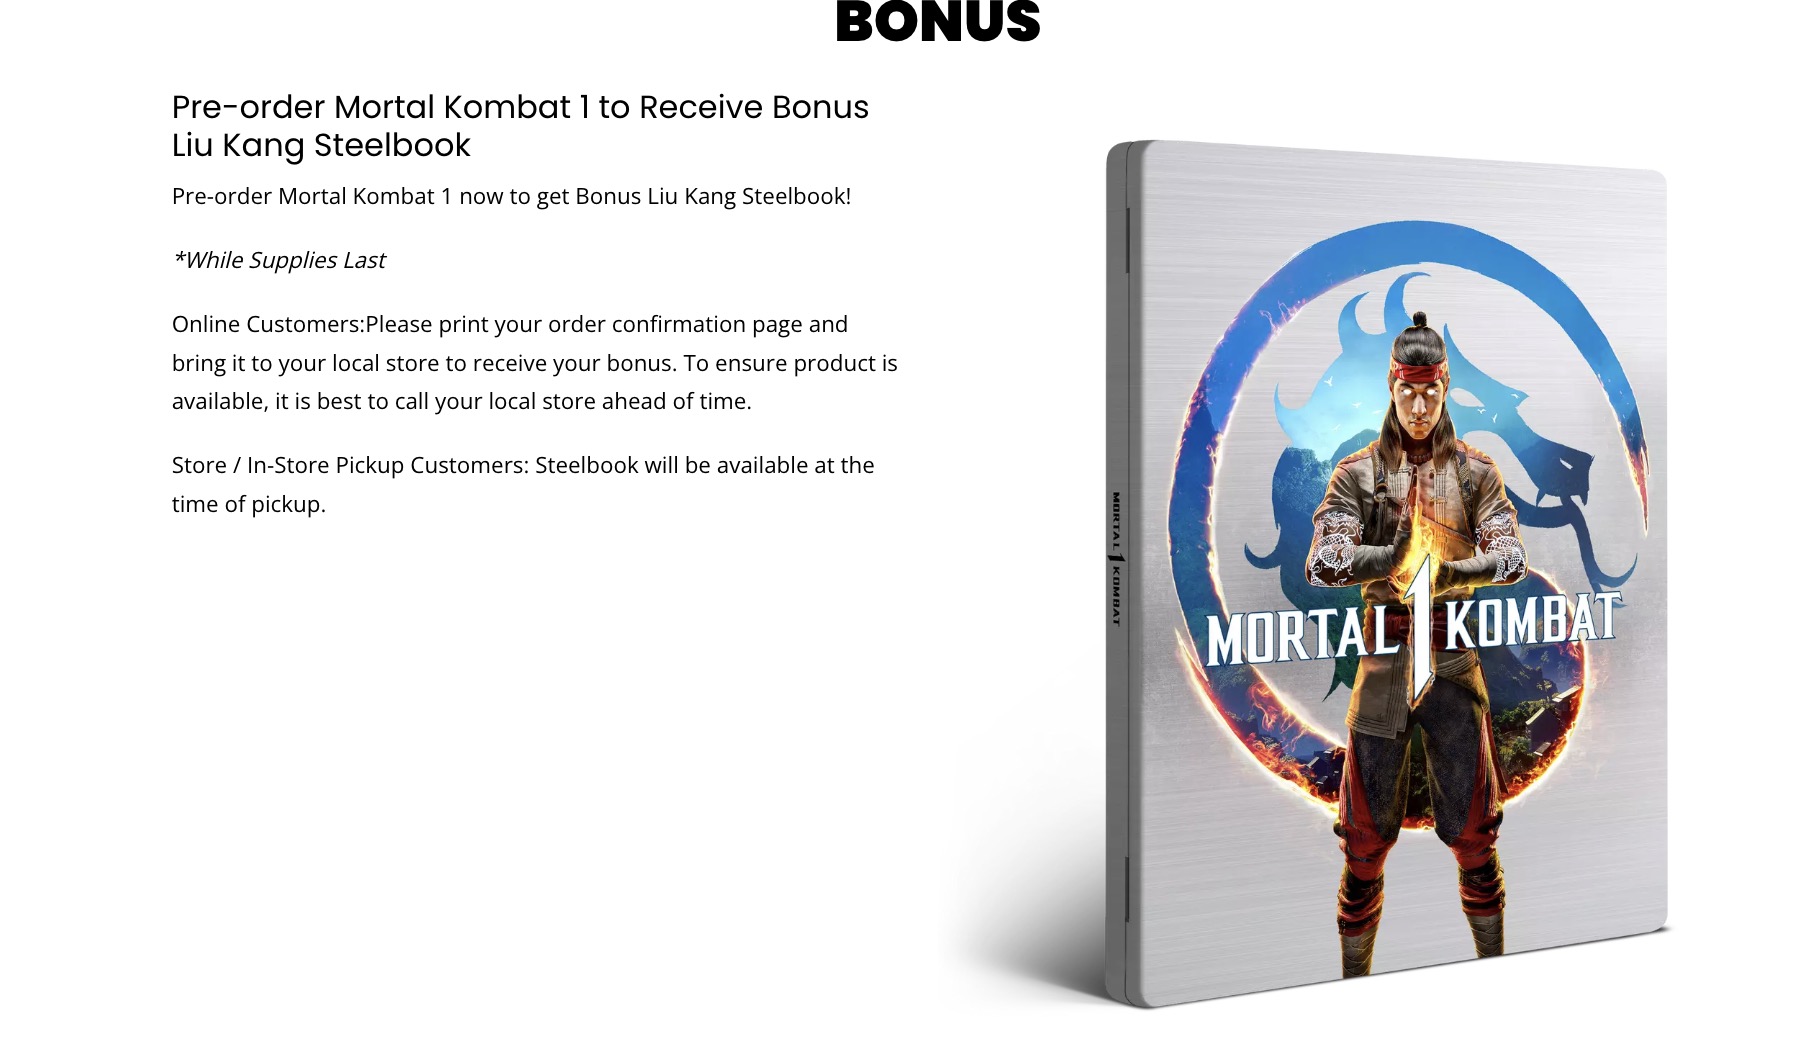 Mortal Kombat 1 Kollectors Edition PS5